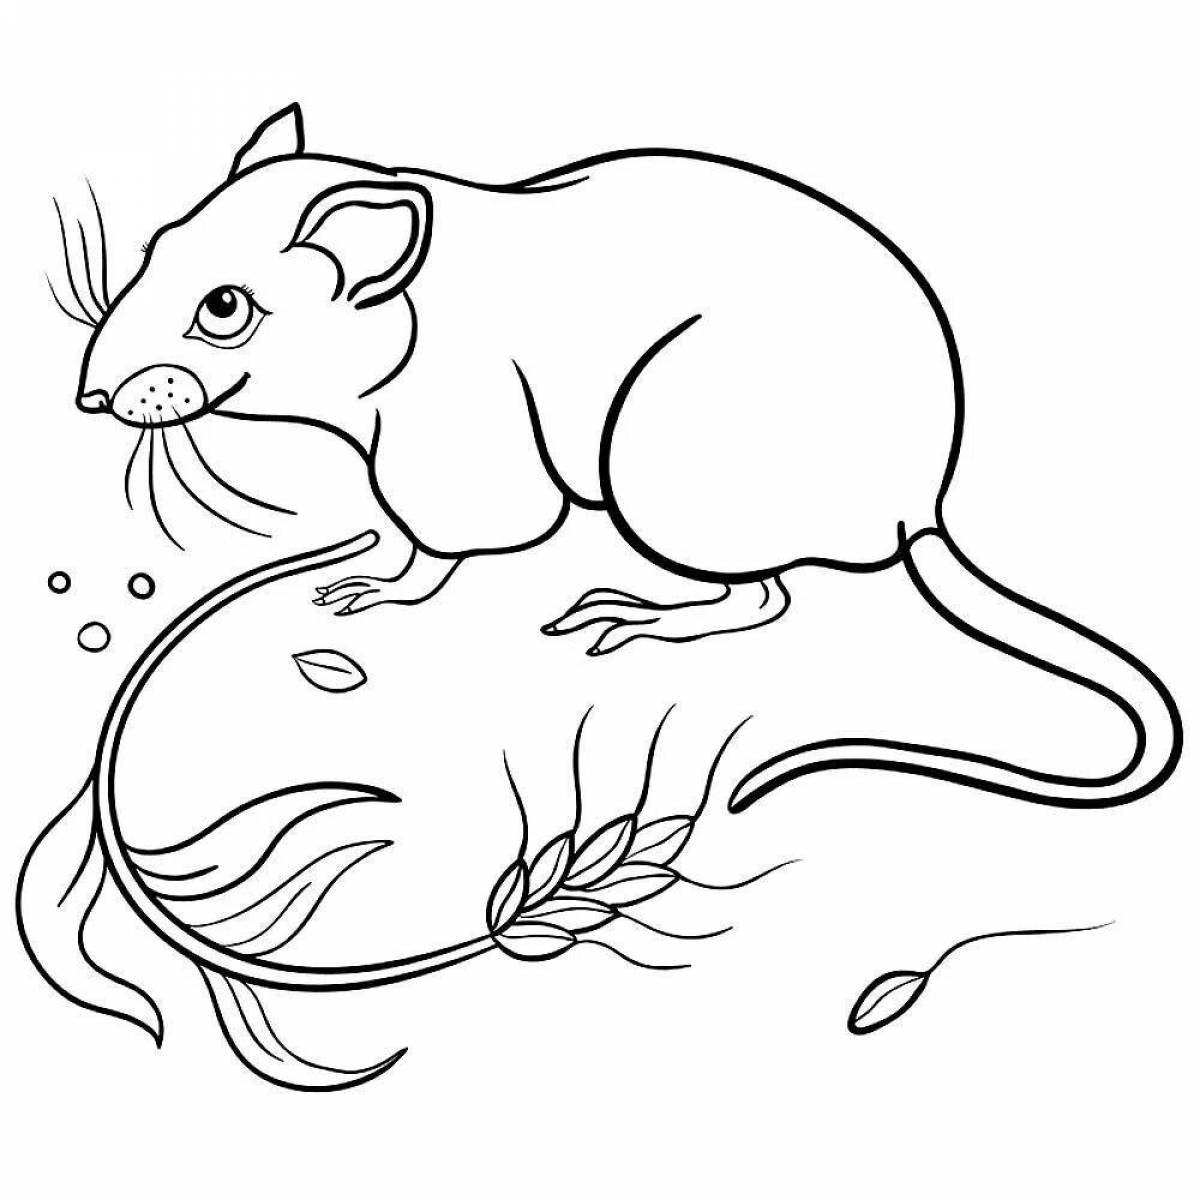 Радиантная раскраска мышь-полевка